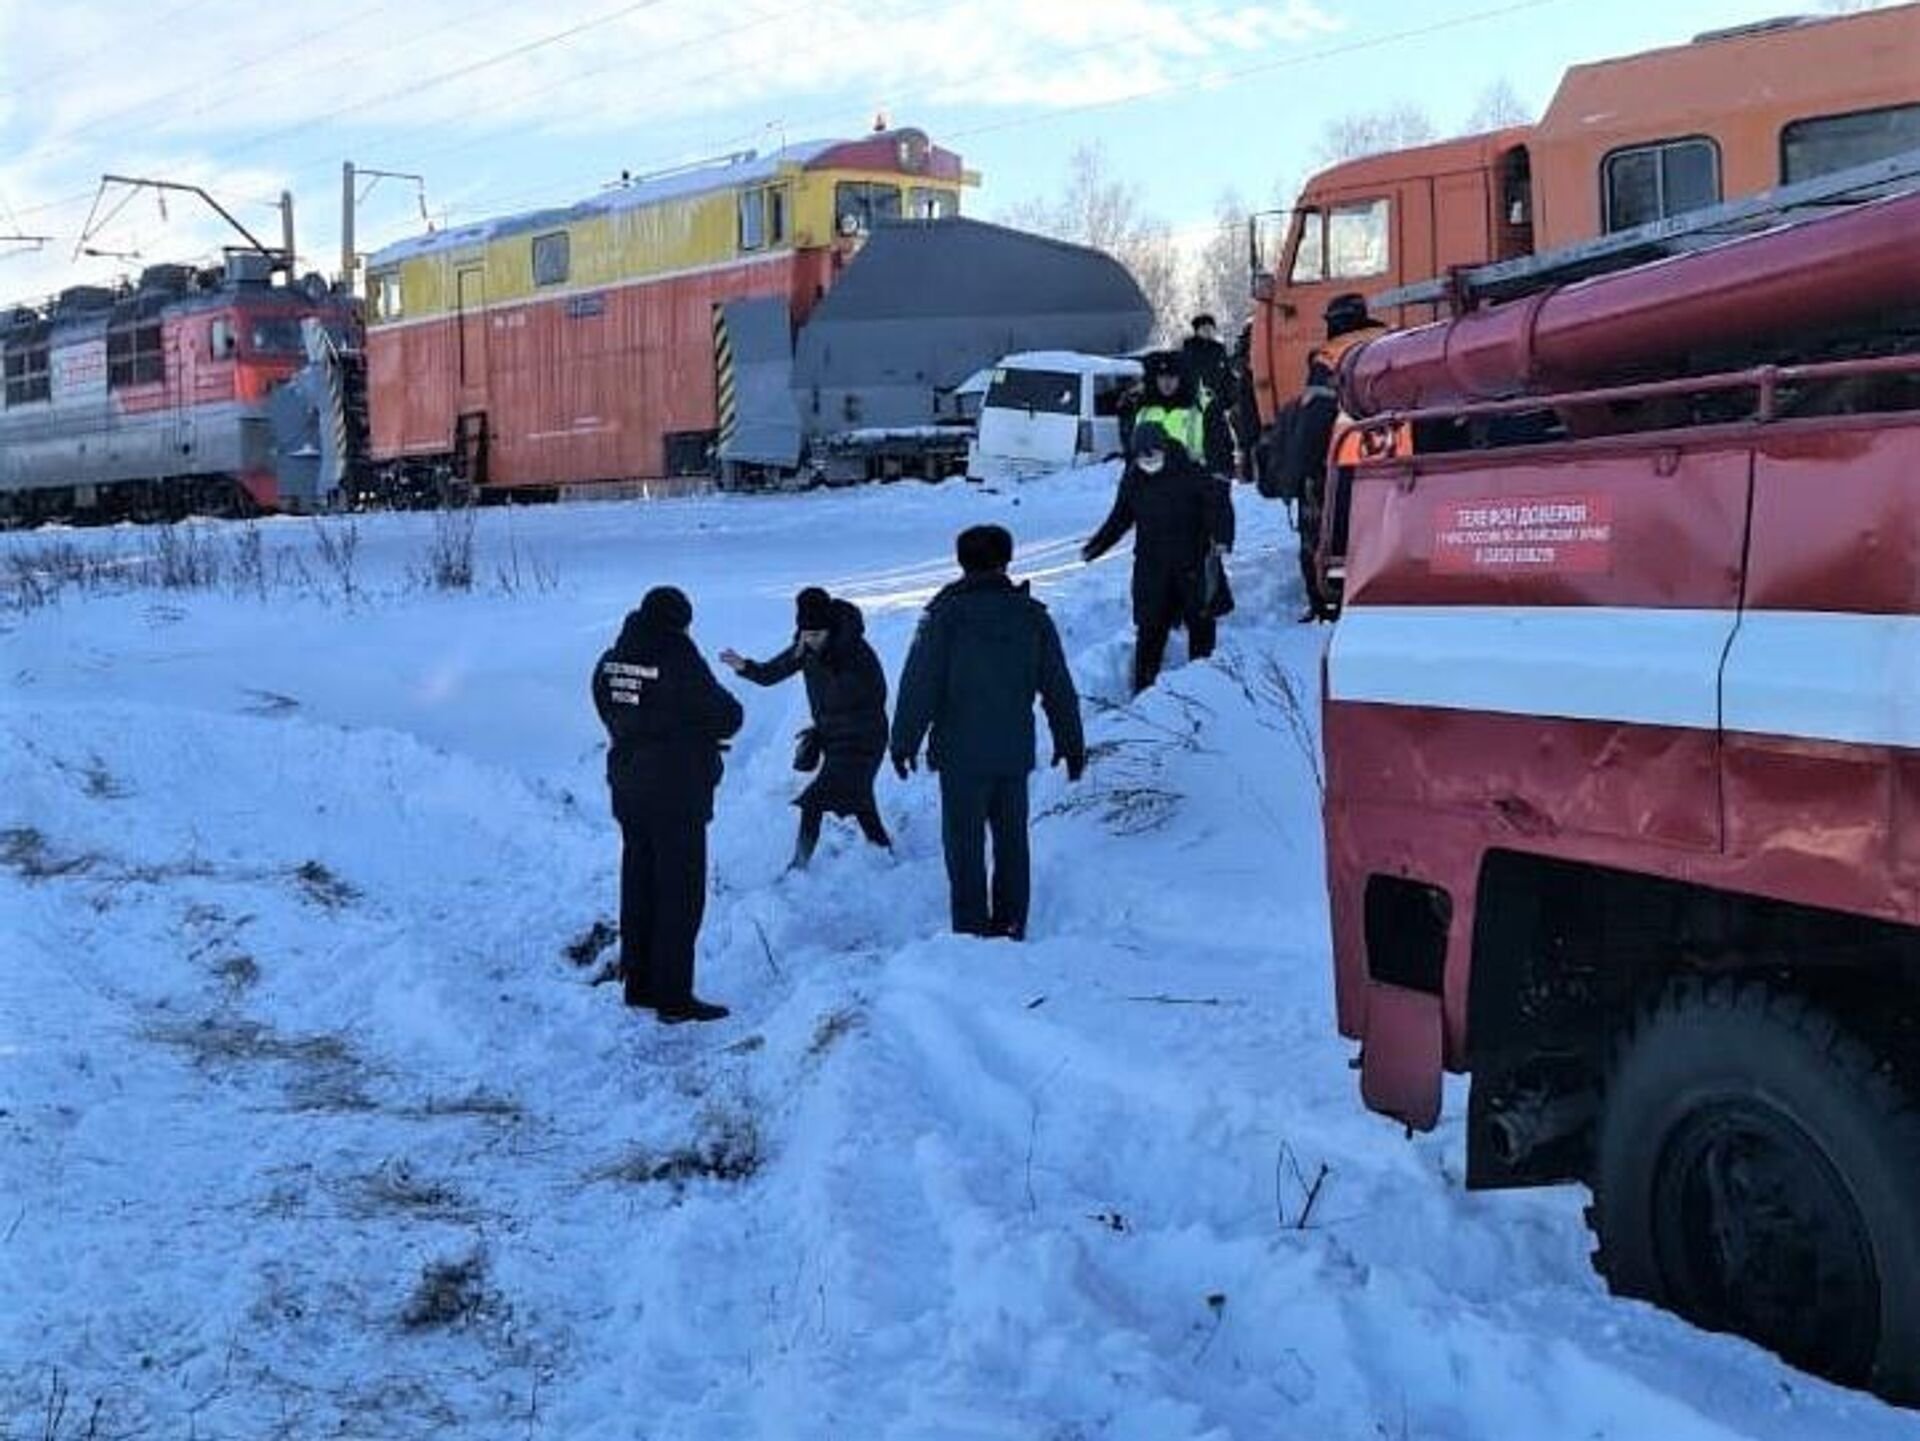 8 декабря 2021 г. Алтай снегоуборочный поезд авария. Происшествия на железной дороге. ДТП В Тальменке Алтайского края.